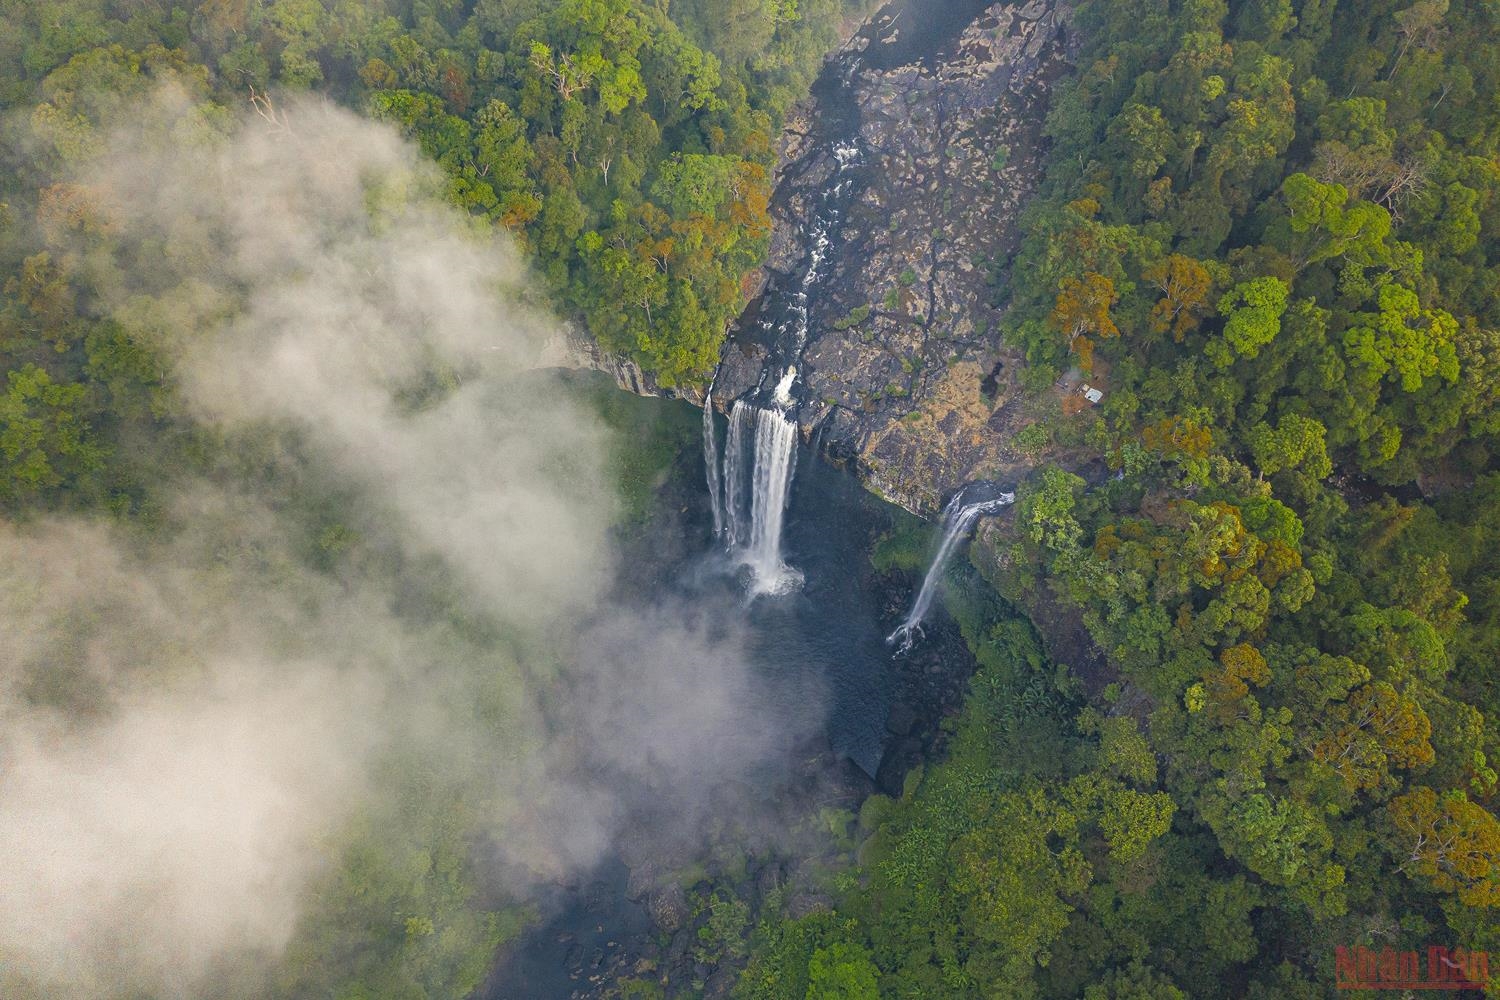 K50 có độ cao khoảng 54 m, tùy theo mùa, thác có độ rộng từ 20m đến 100m. Từ trong lòng núi, thác nước chảy xiết, mạnh xuống con suối dài